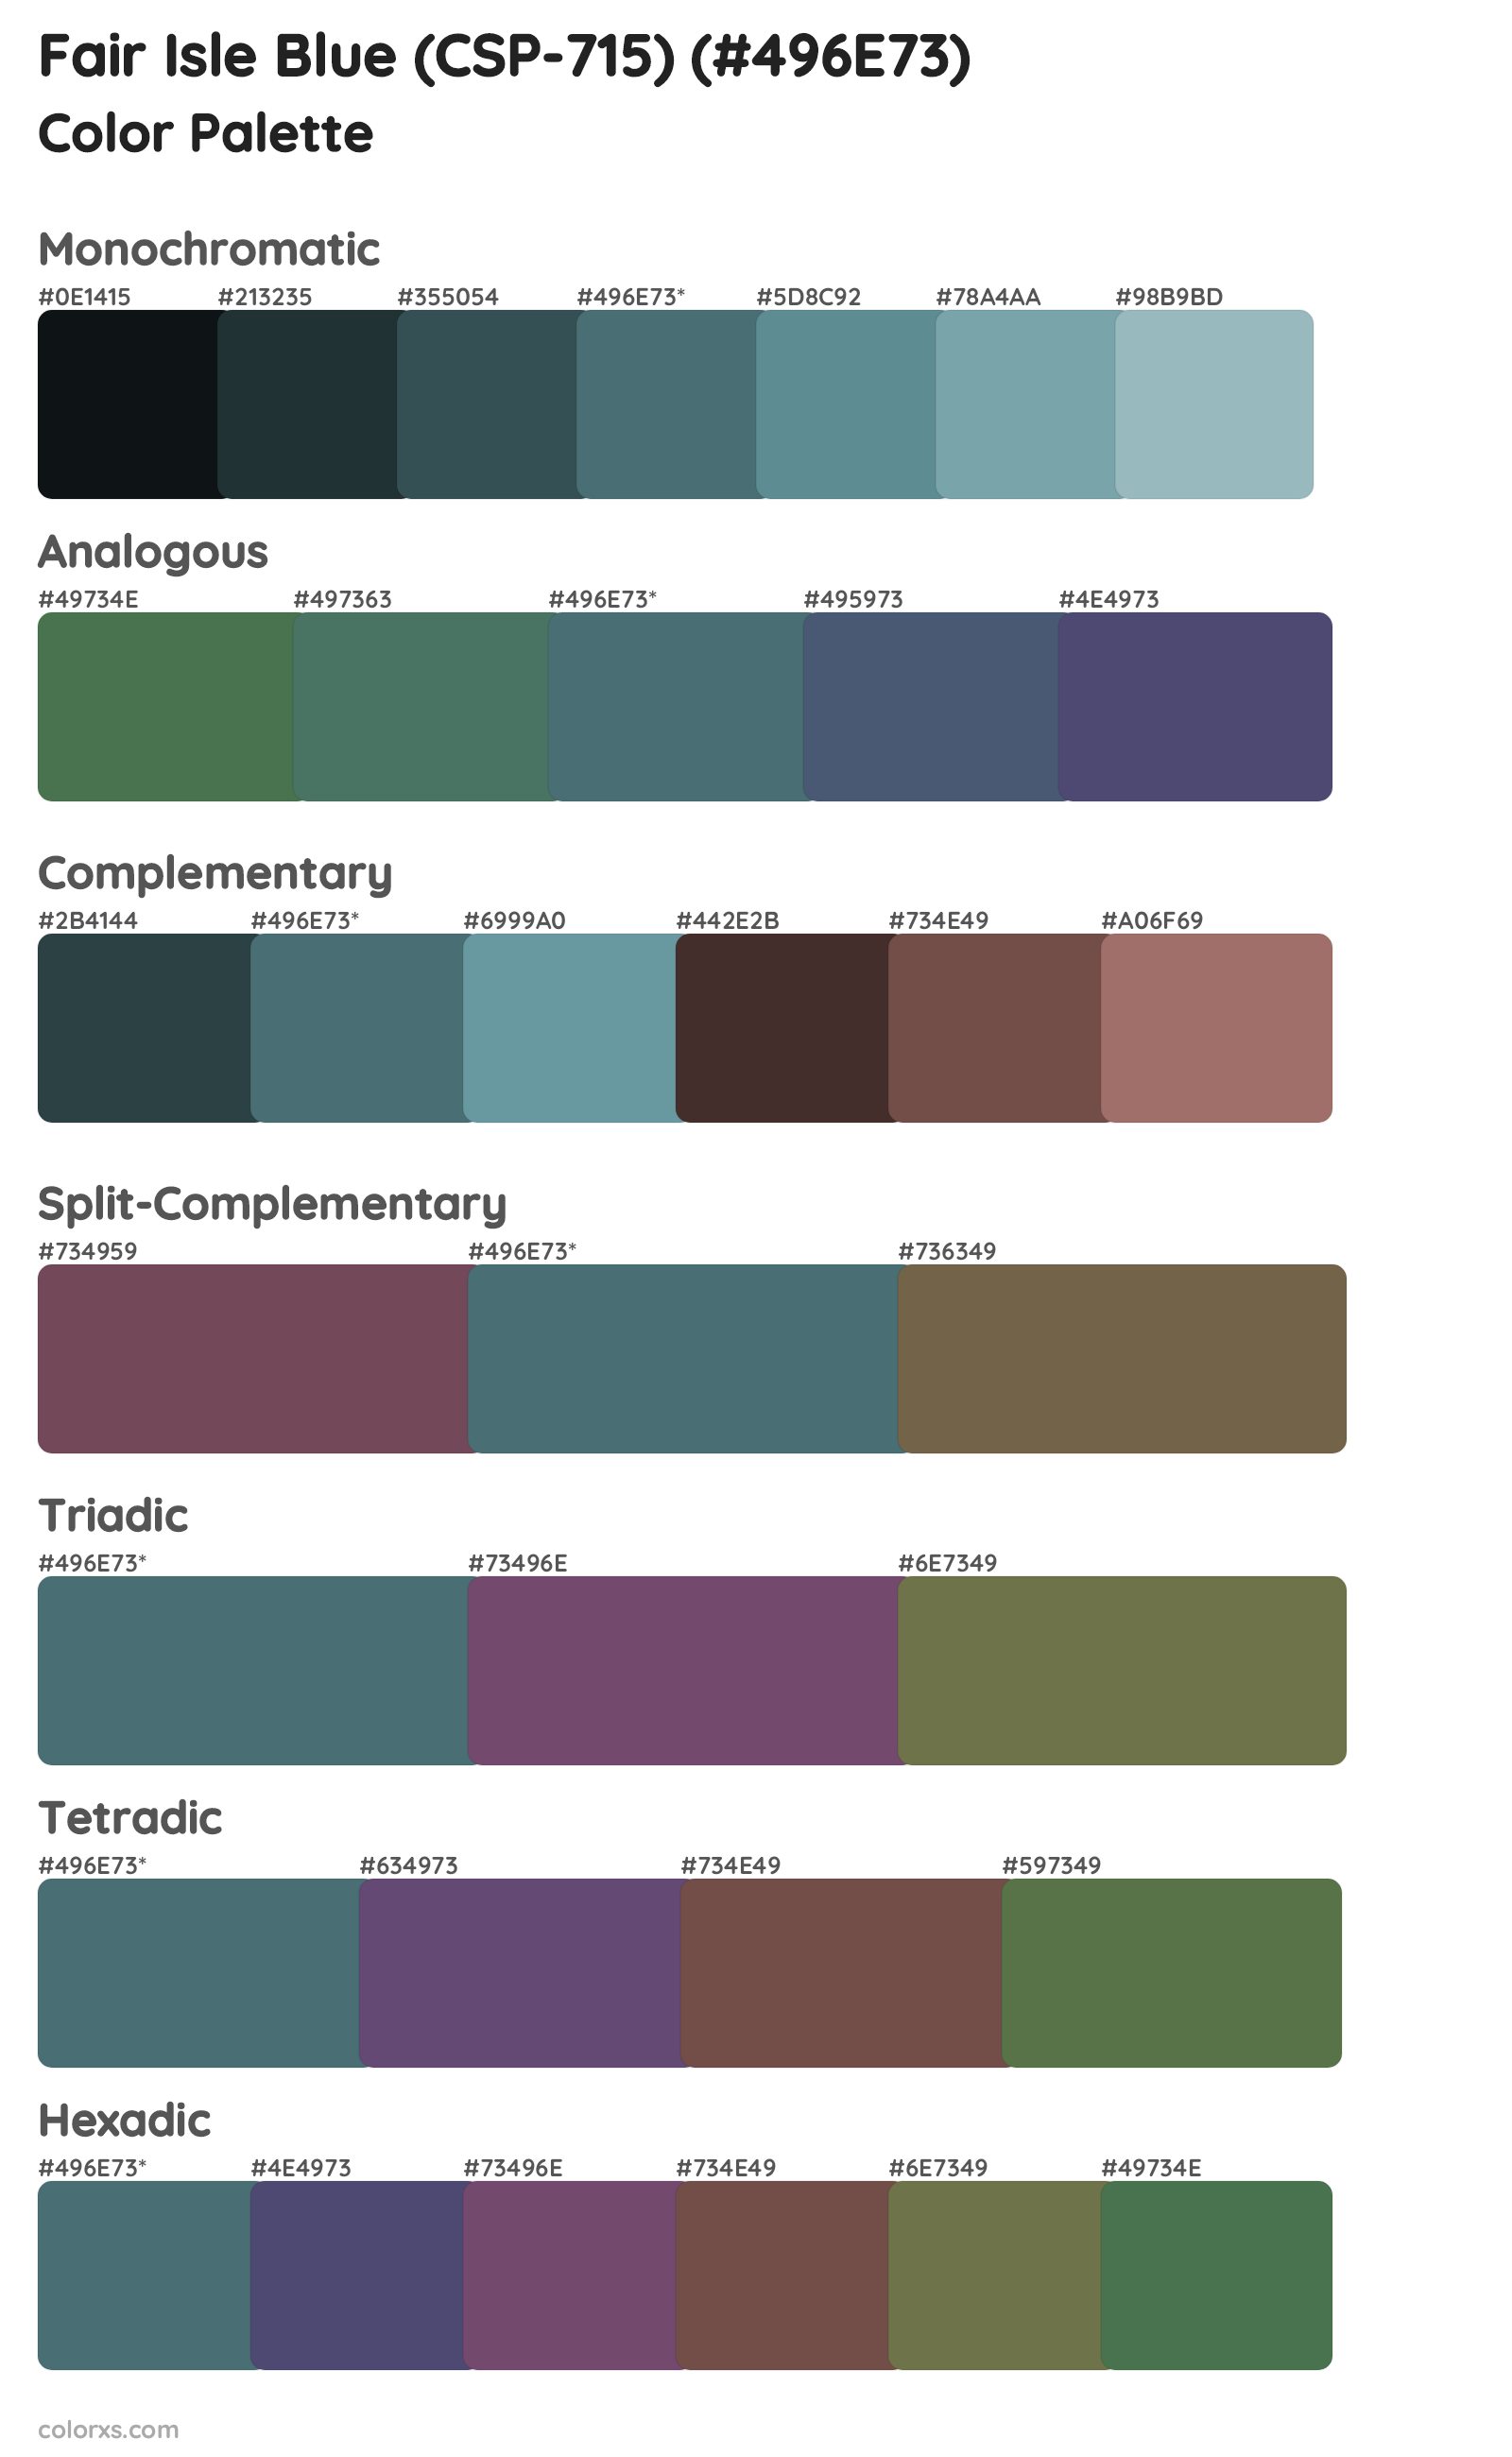 Fair Isle Blue (CSP-715) Color Scheme Palettes